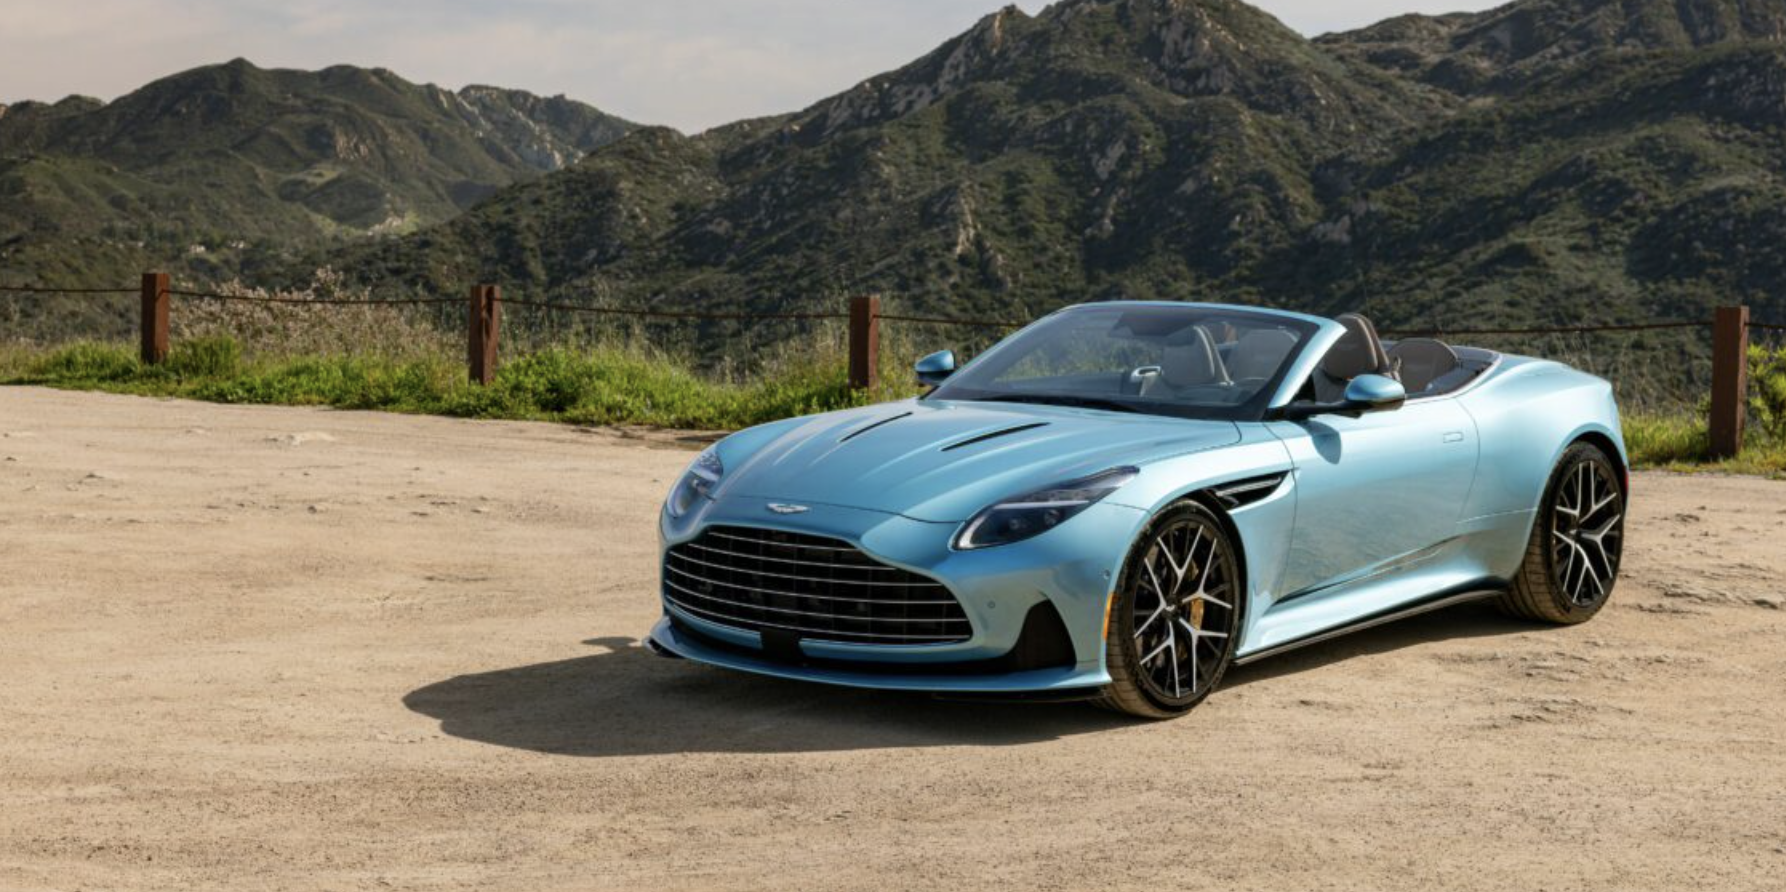  luxury automotive, Aston Martin